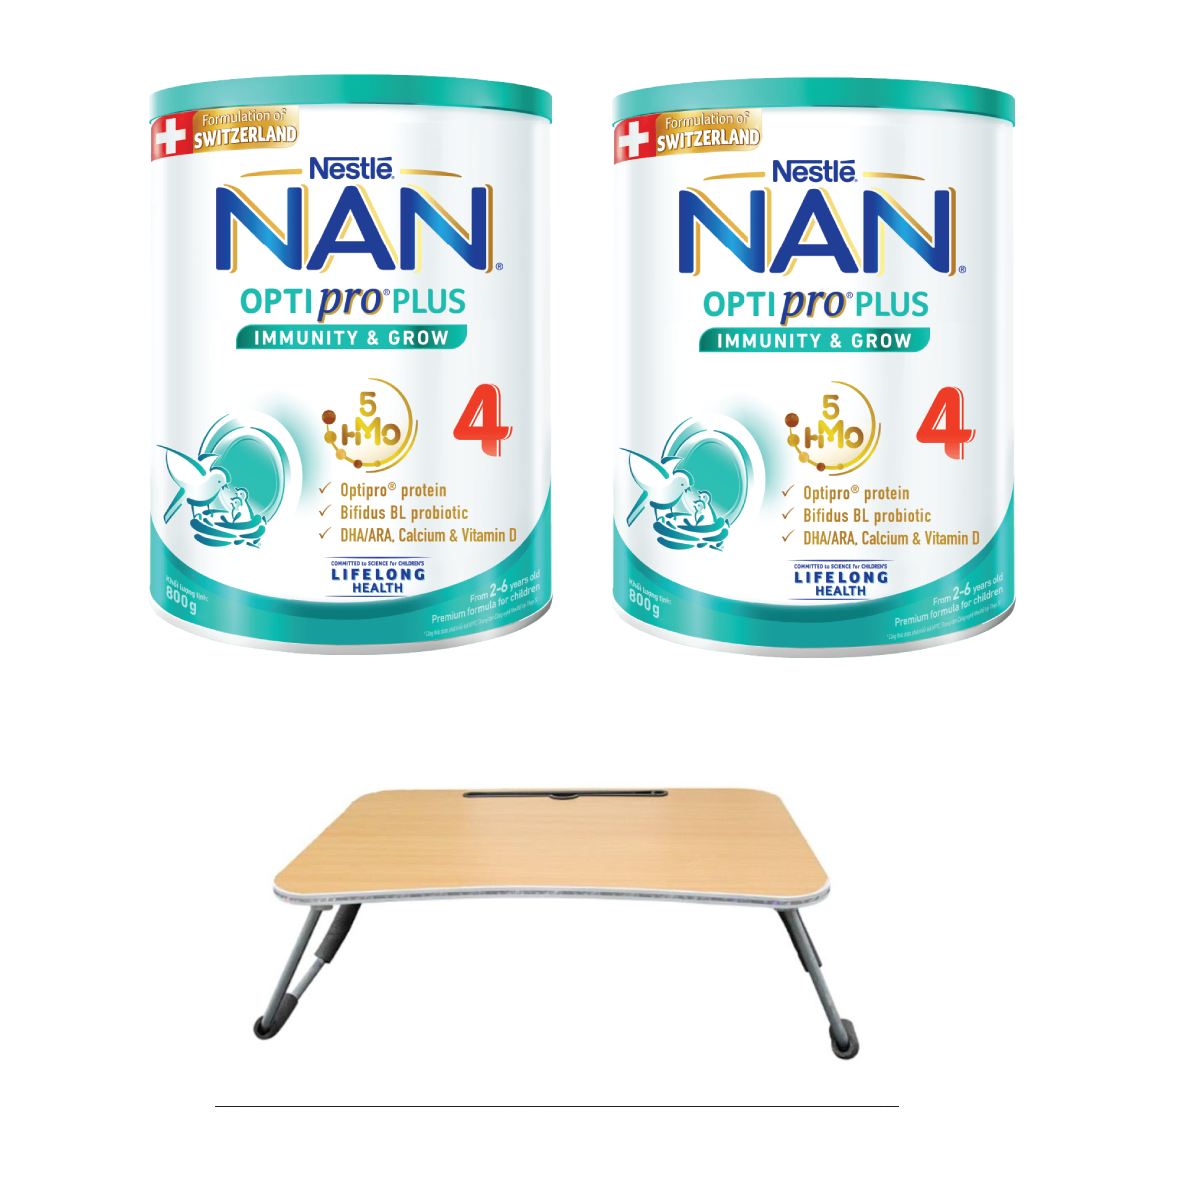 Bộ 2 lon Sữa bột Nestlé NAN OPTIPRO PLUS 4 800g/lon với 5HMO Giúp tiêu hóa tốt + Tăng cường đề kháng + Tặng Bàn học gấp gọn - Bé 2-6 tuổi